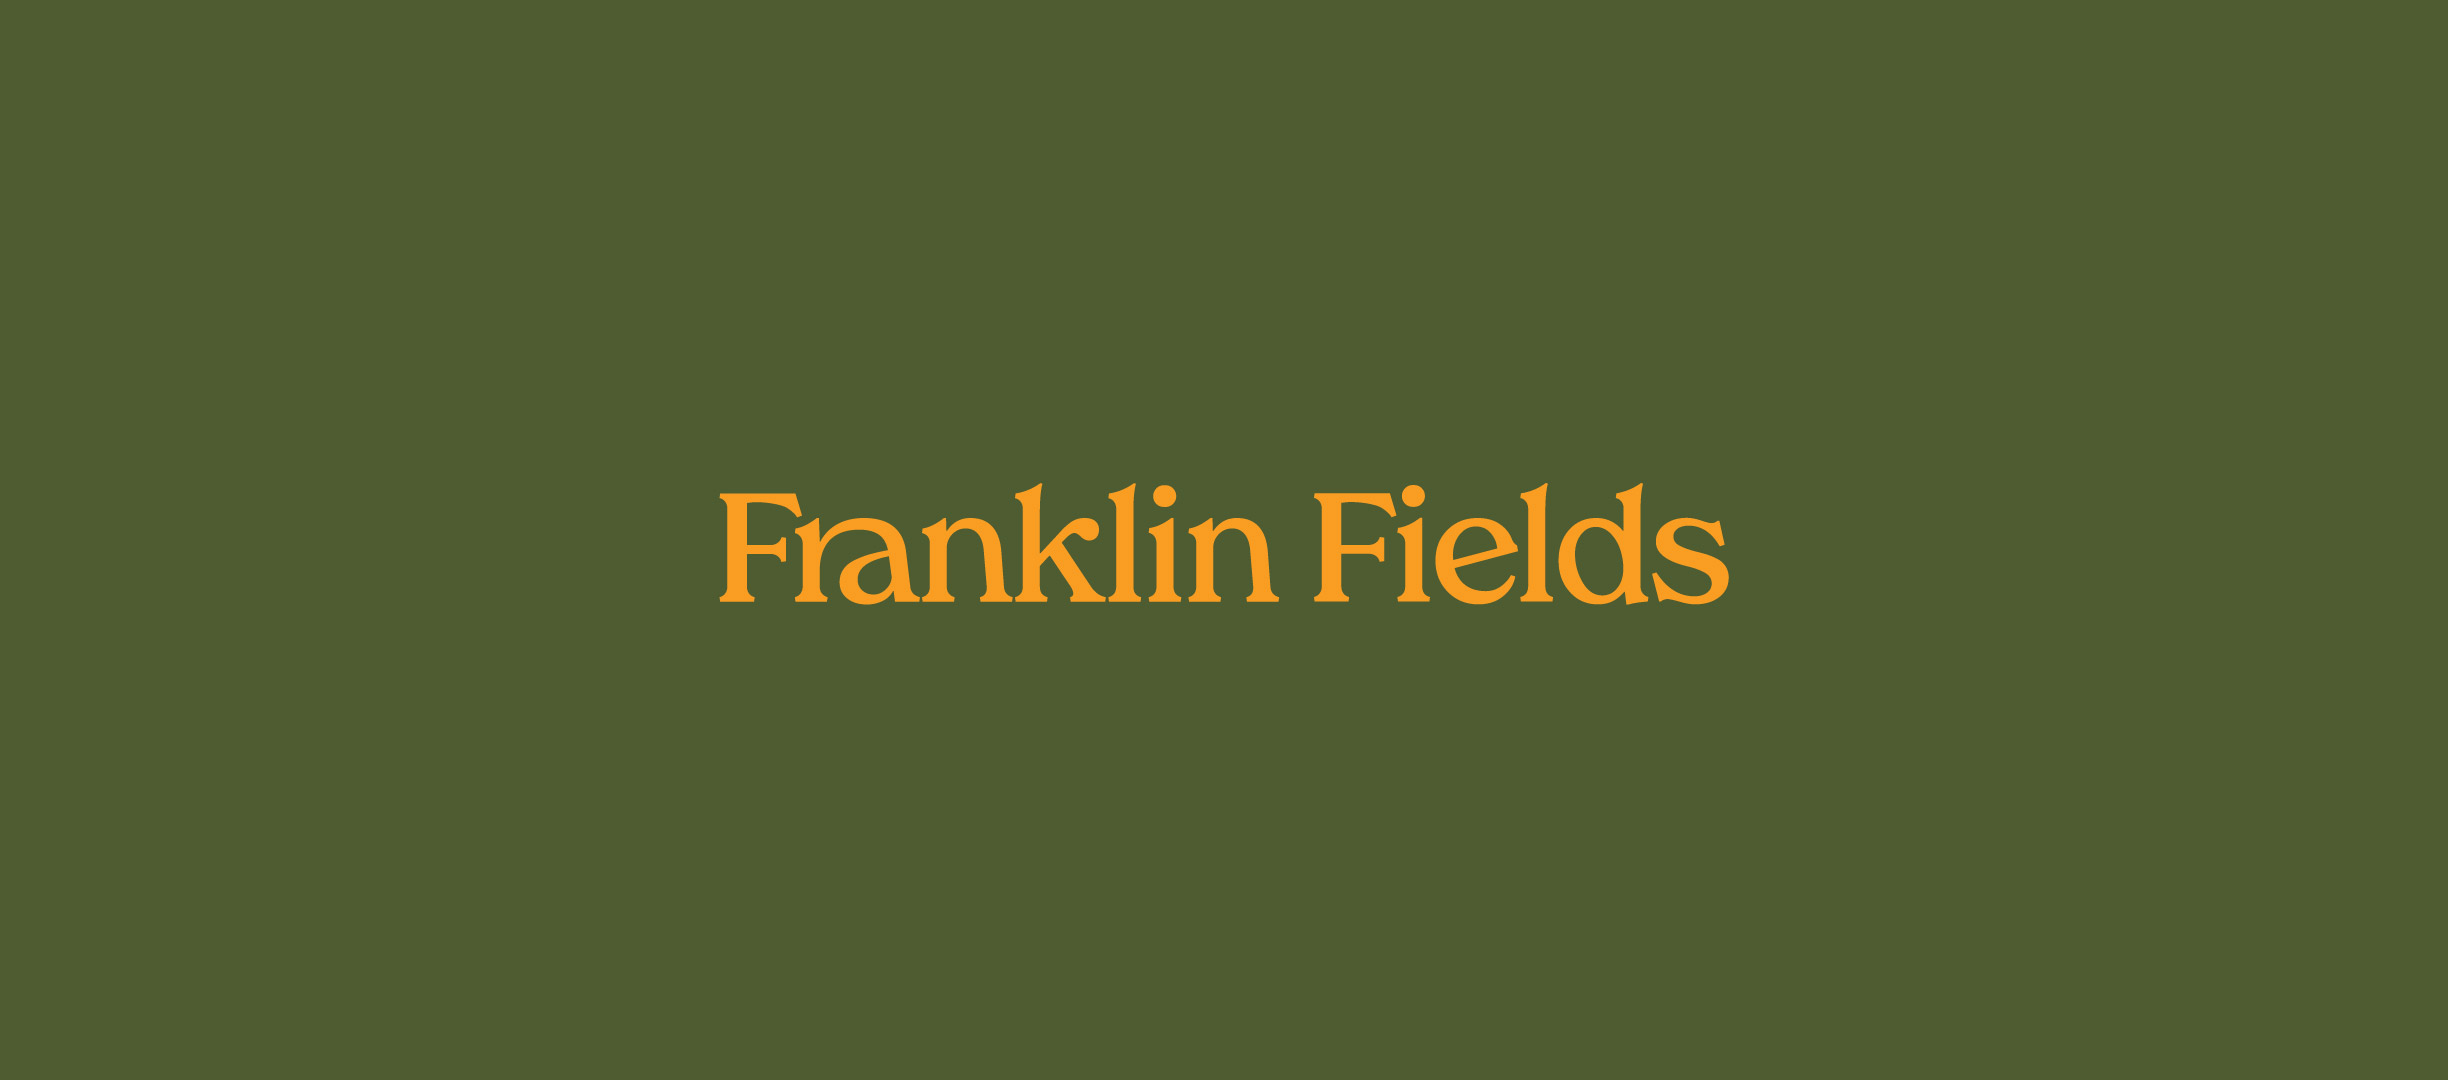 Franklin-Fields-Header